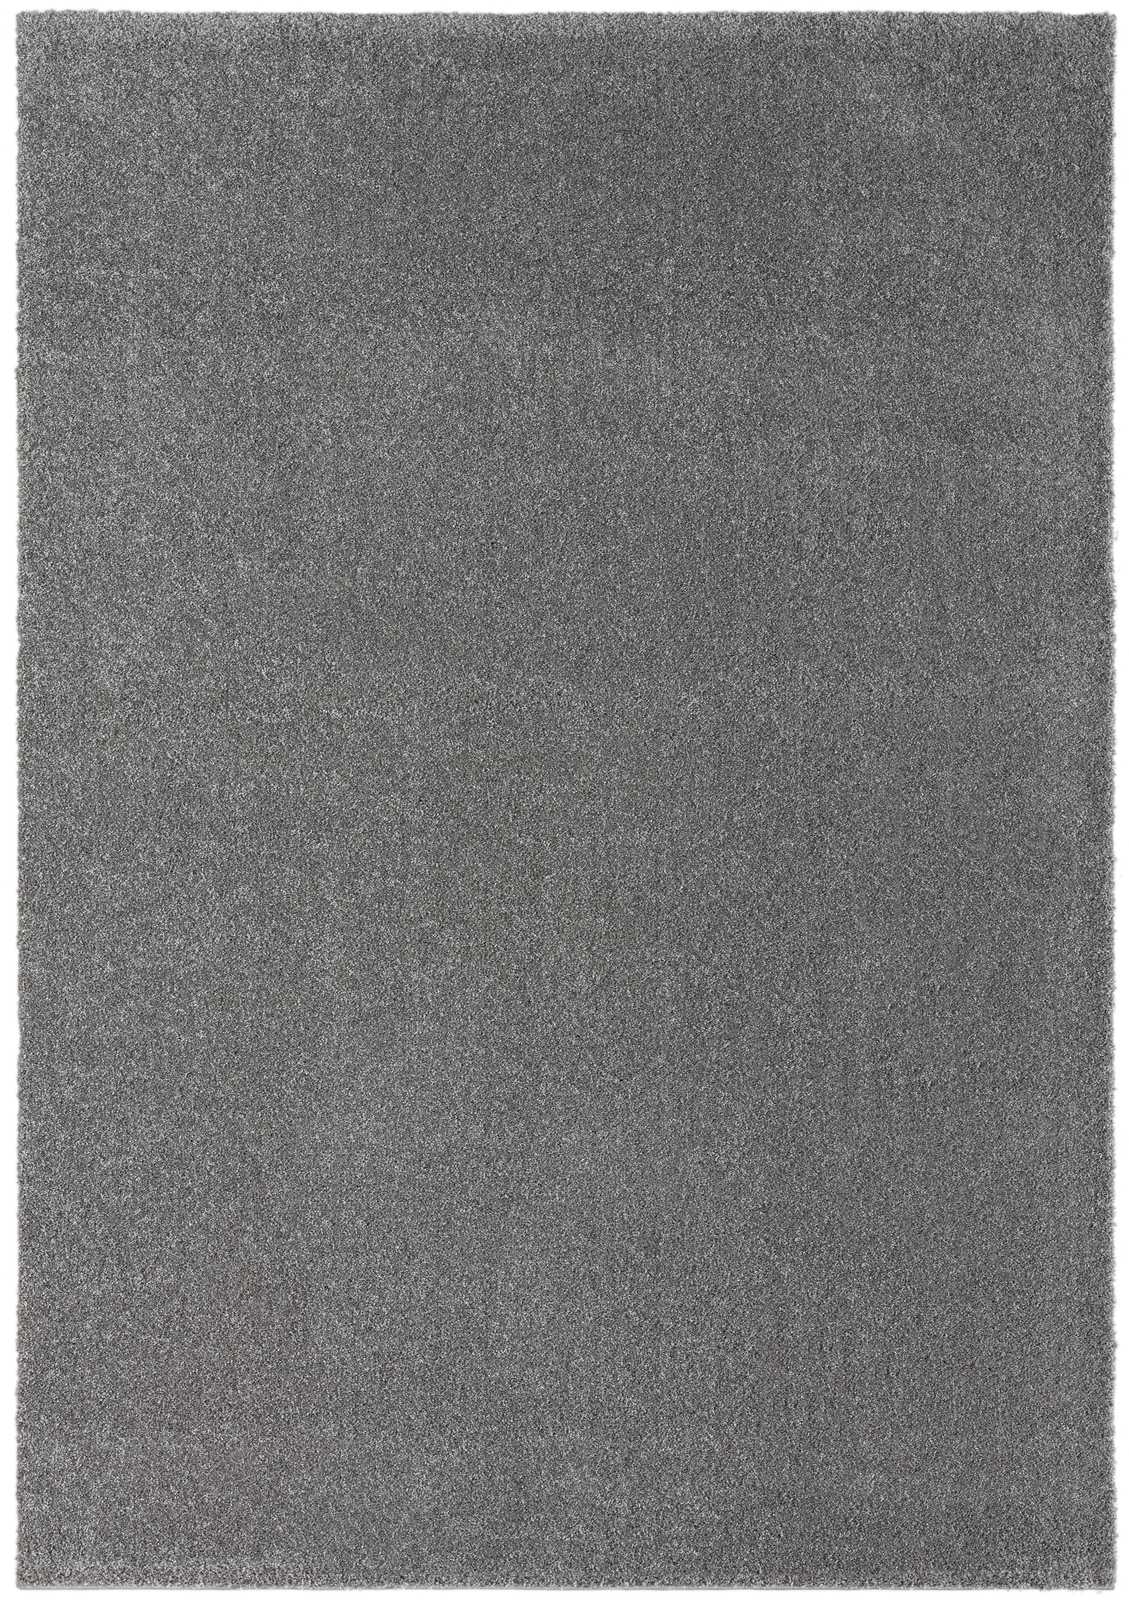             Tapis moelleux à poils courts gris - 110 x 60 cm
        